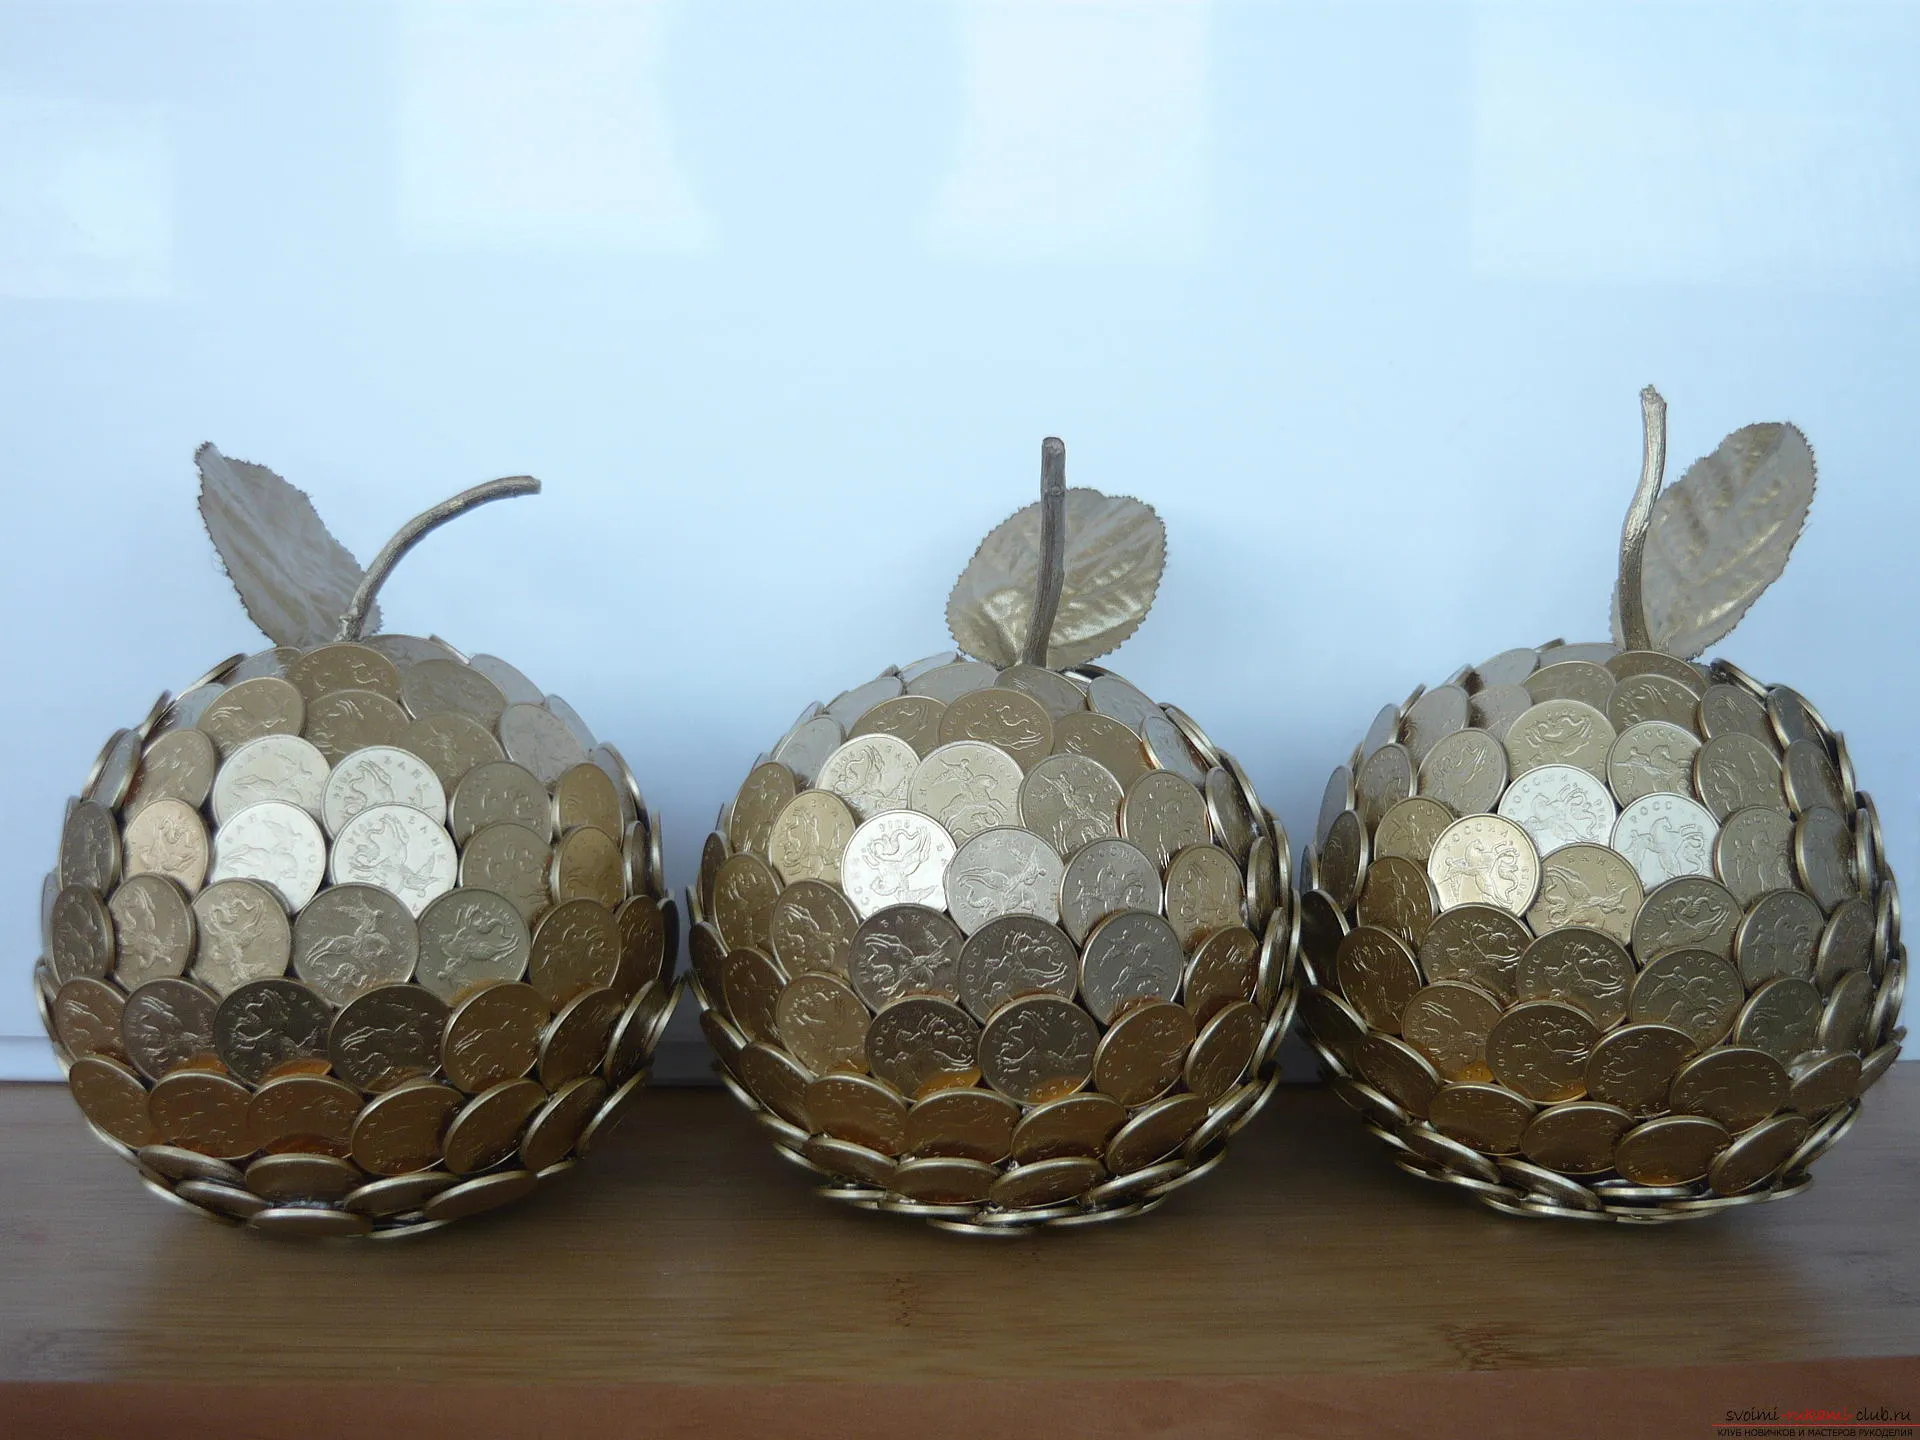 Този майсторски клас ще покаже как да създадете ябълката на монетите със собствените си ръце